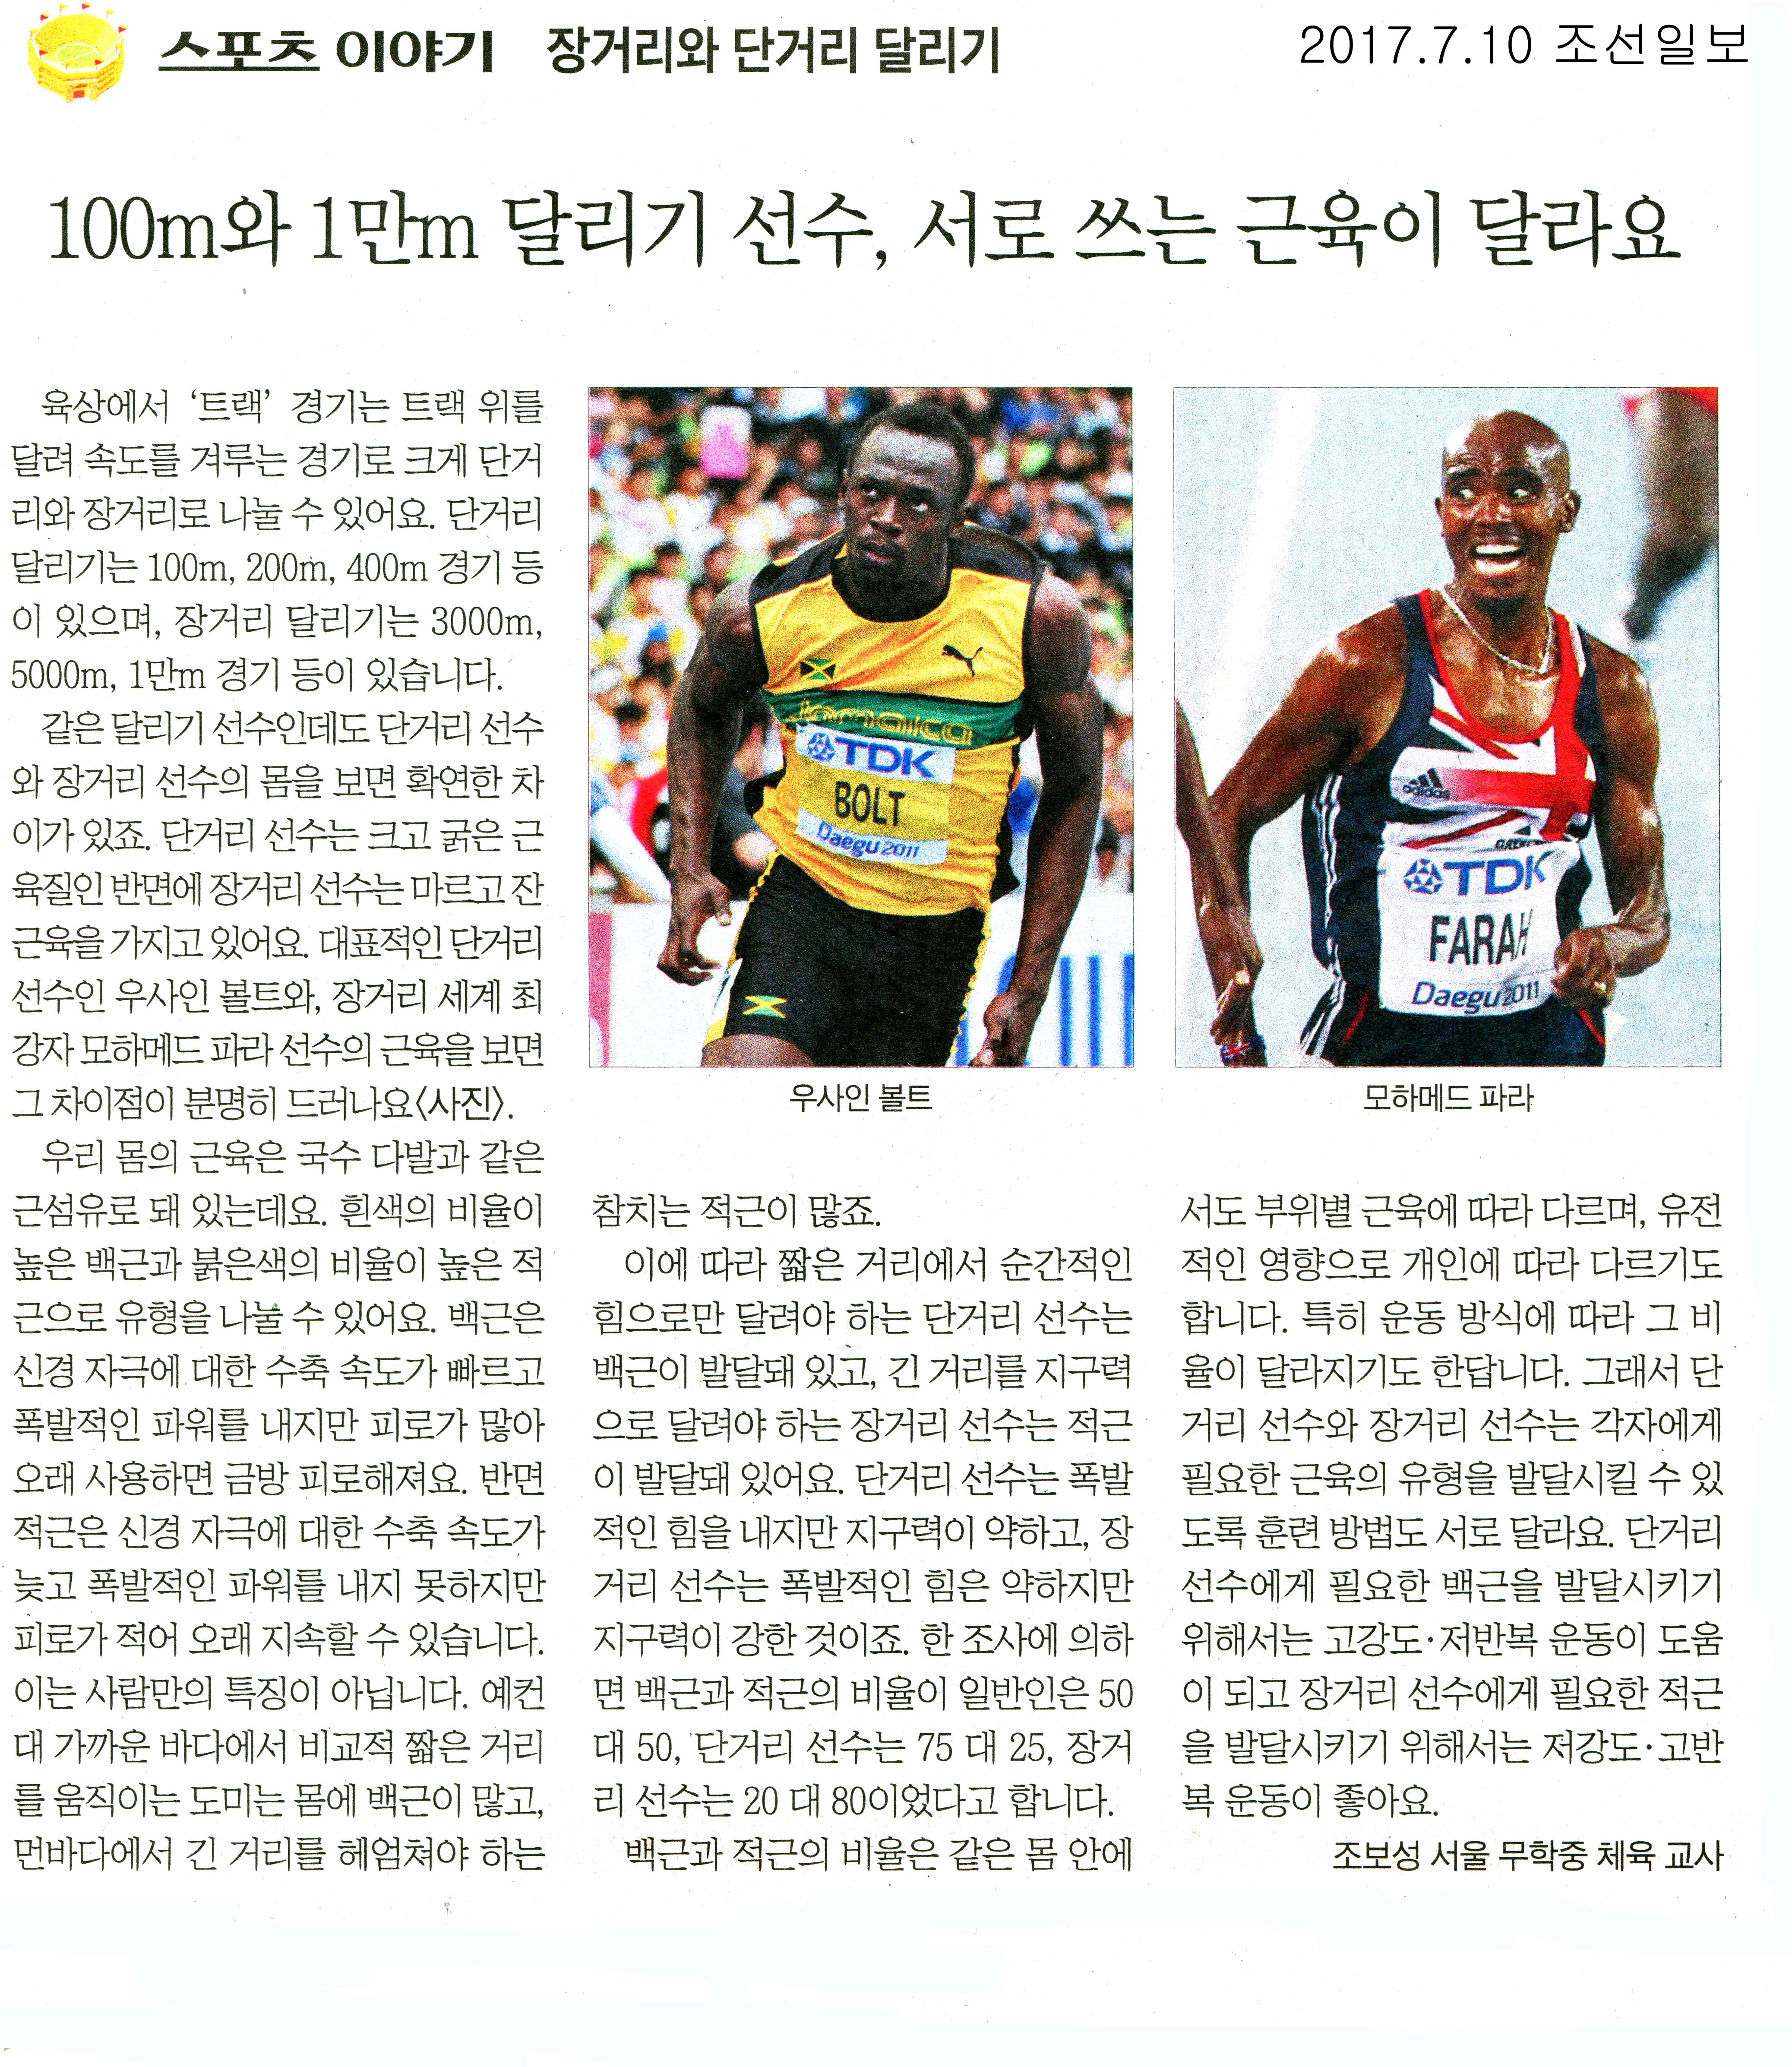 100m와 1만m 달리기 선수, 서로 쓰는 근육이 달라요